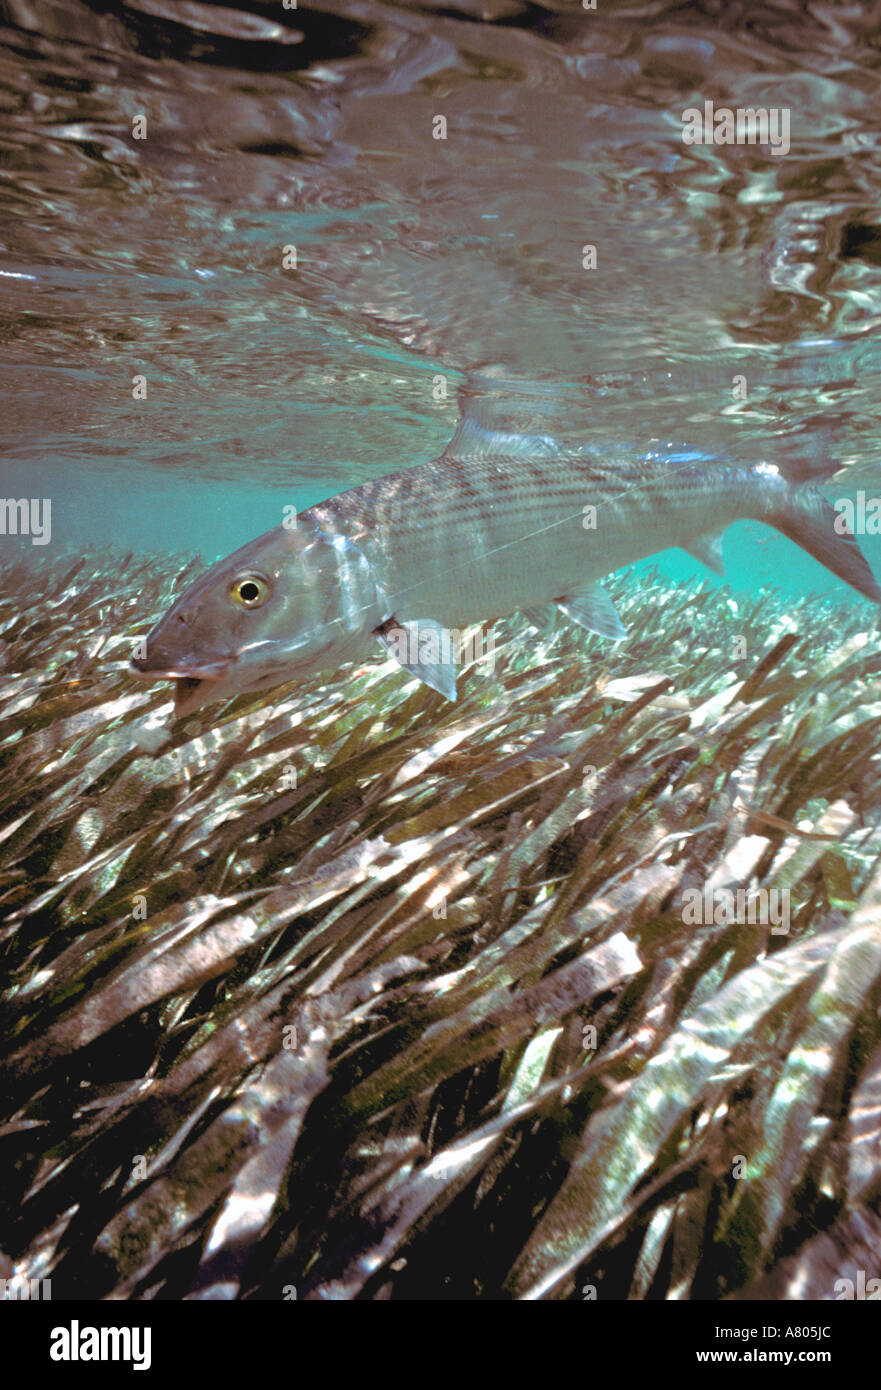 Au cours de natation sous-marine Bonefish herbe de mer peu profonde de l'anguille argentée gamefish scales Banque D'Images